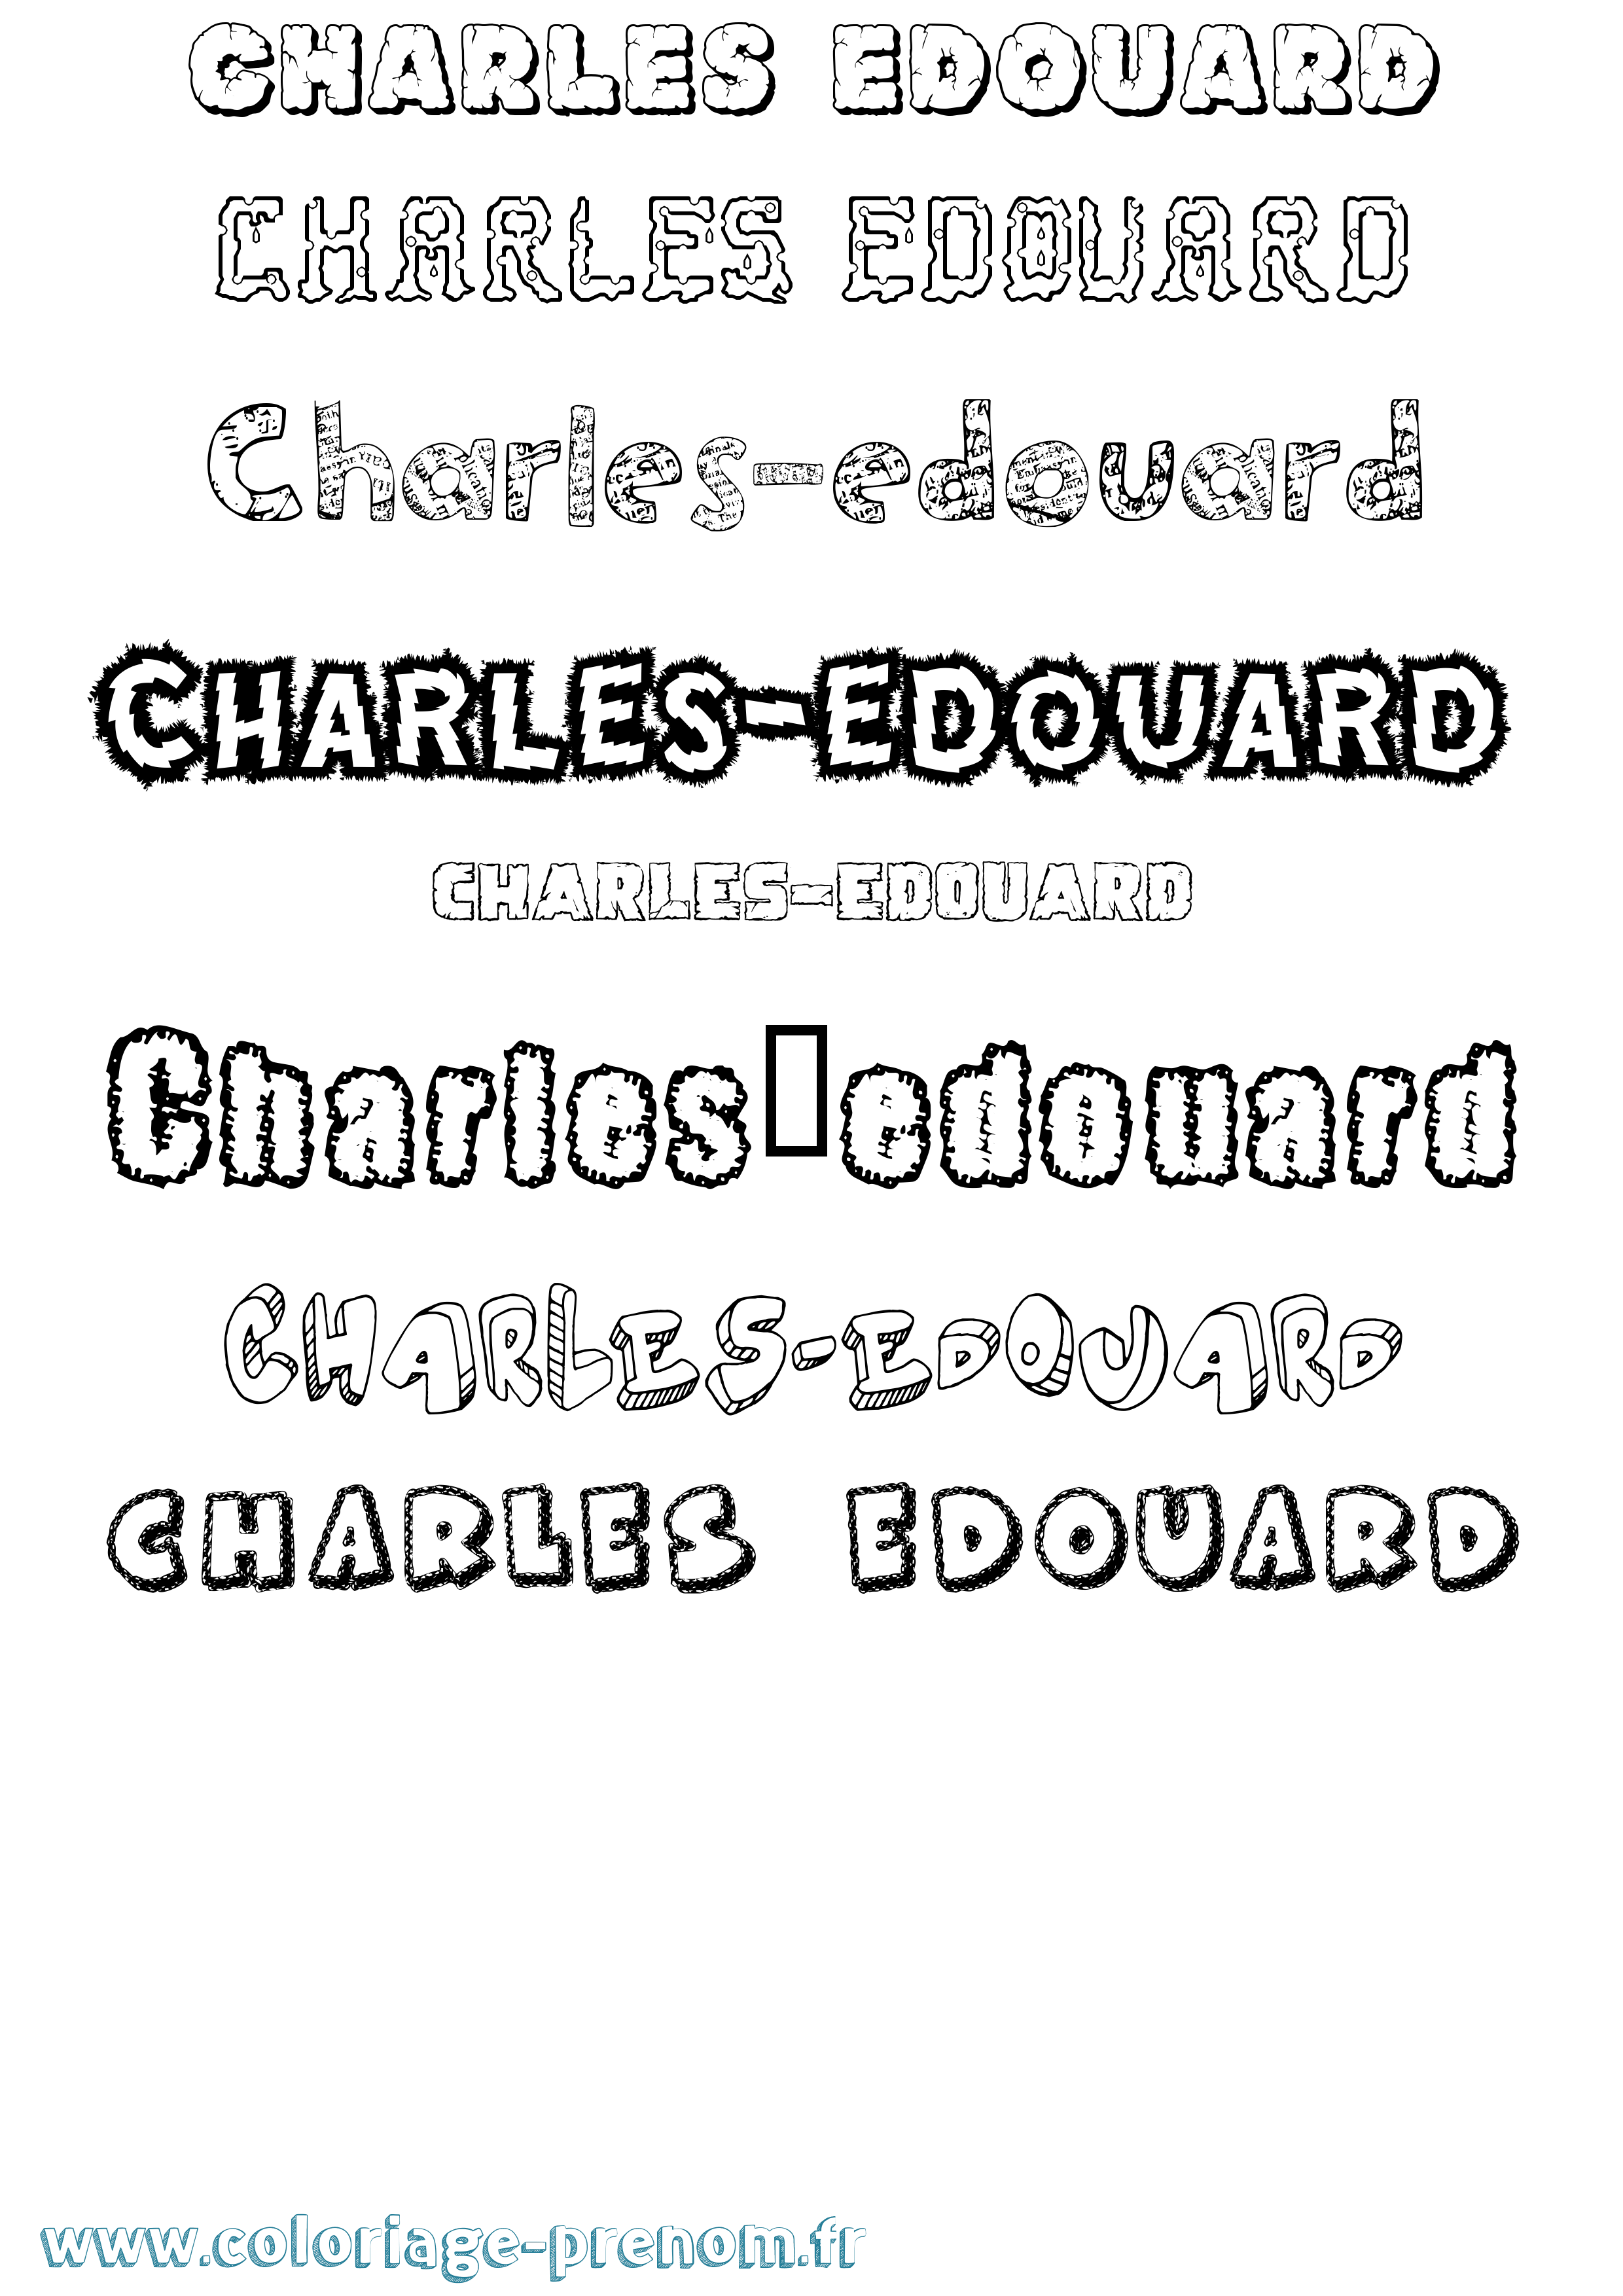 Coloriage prénom Charles-Edouard Destructuré